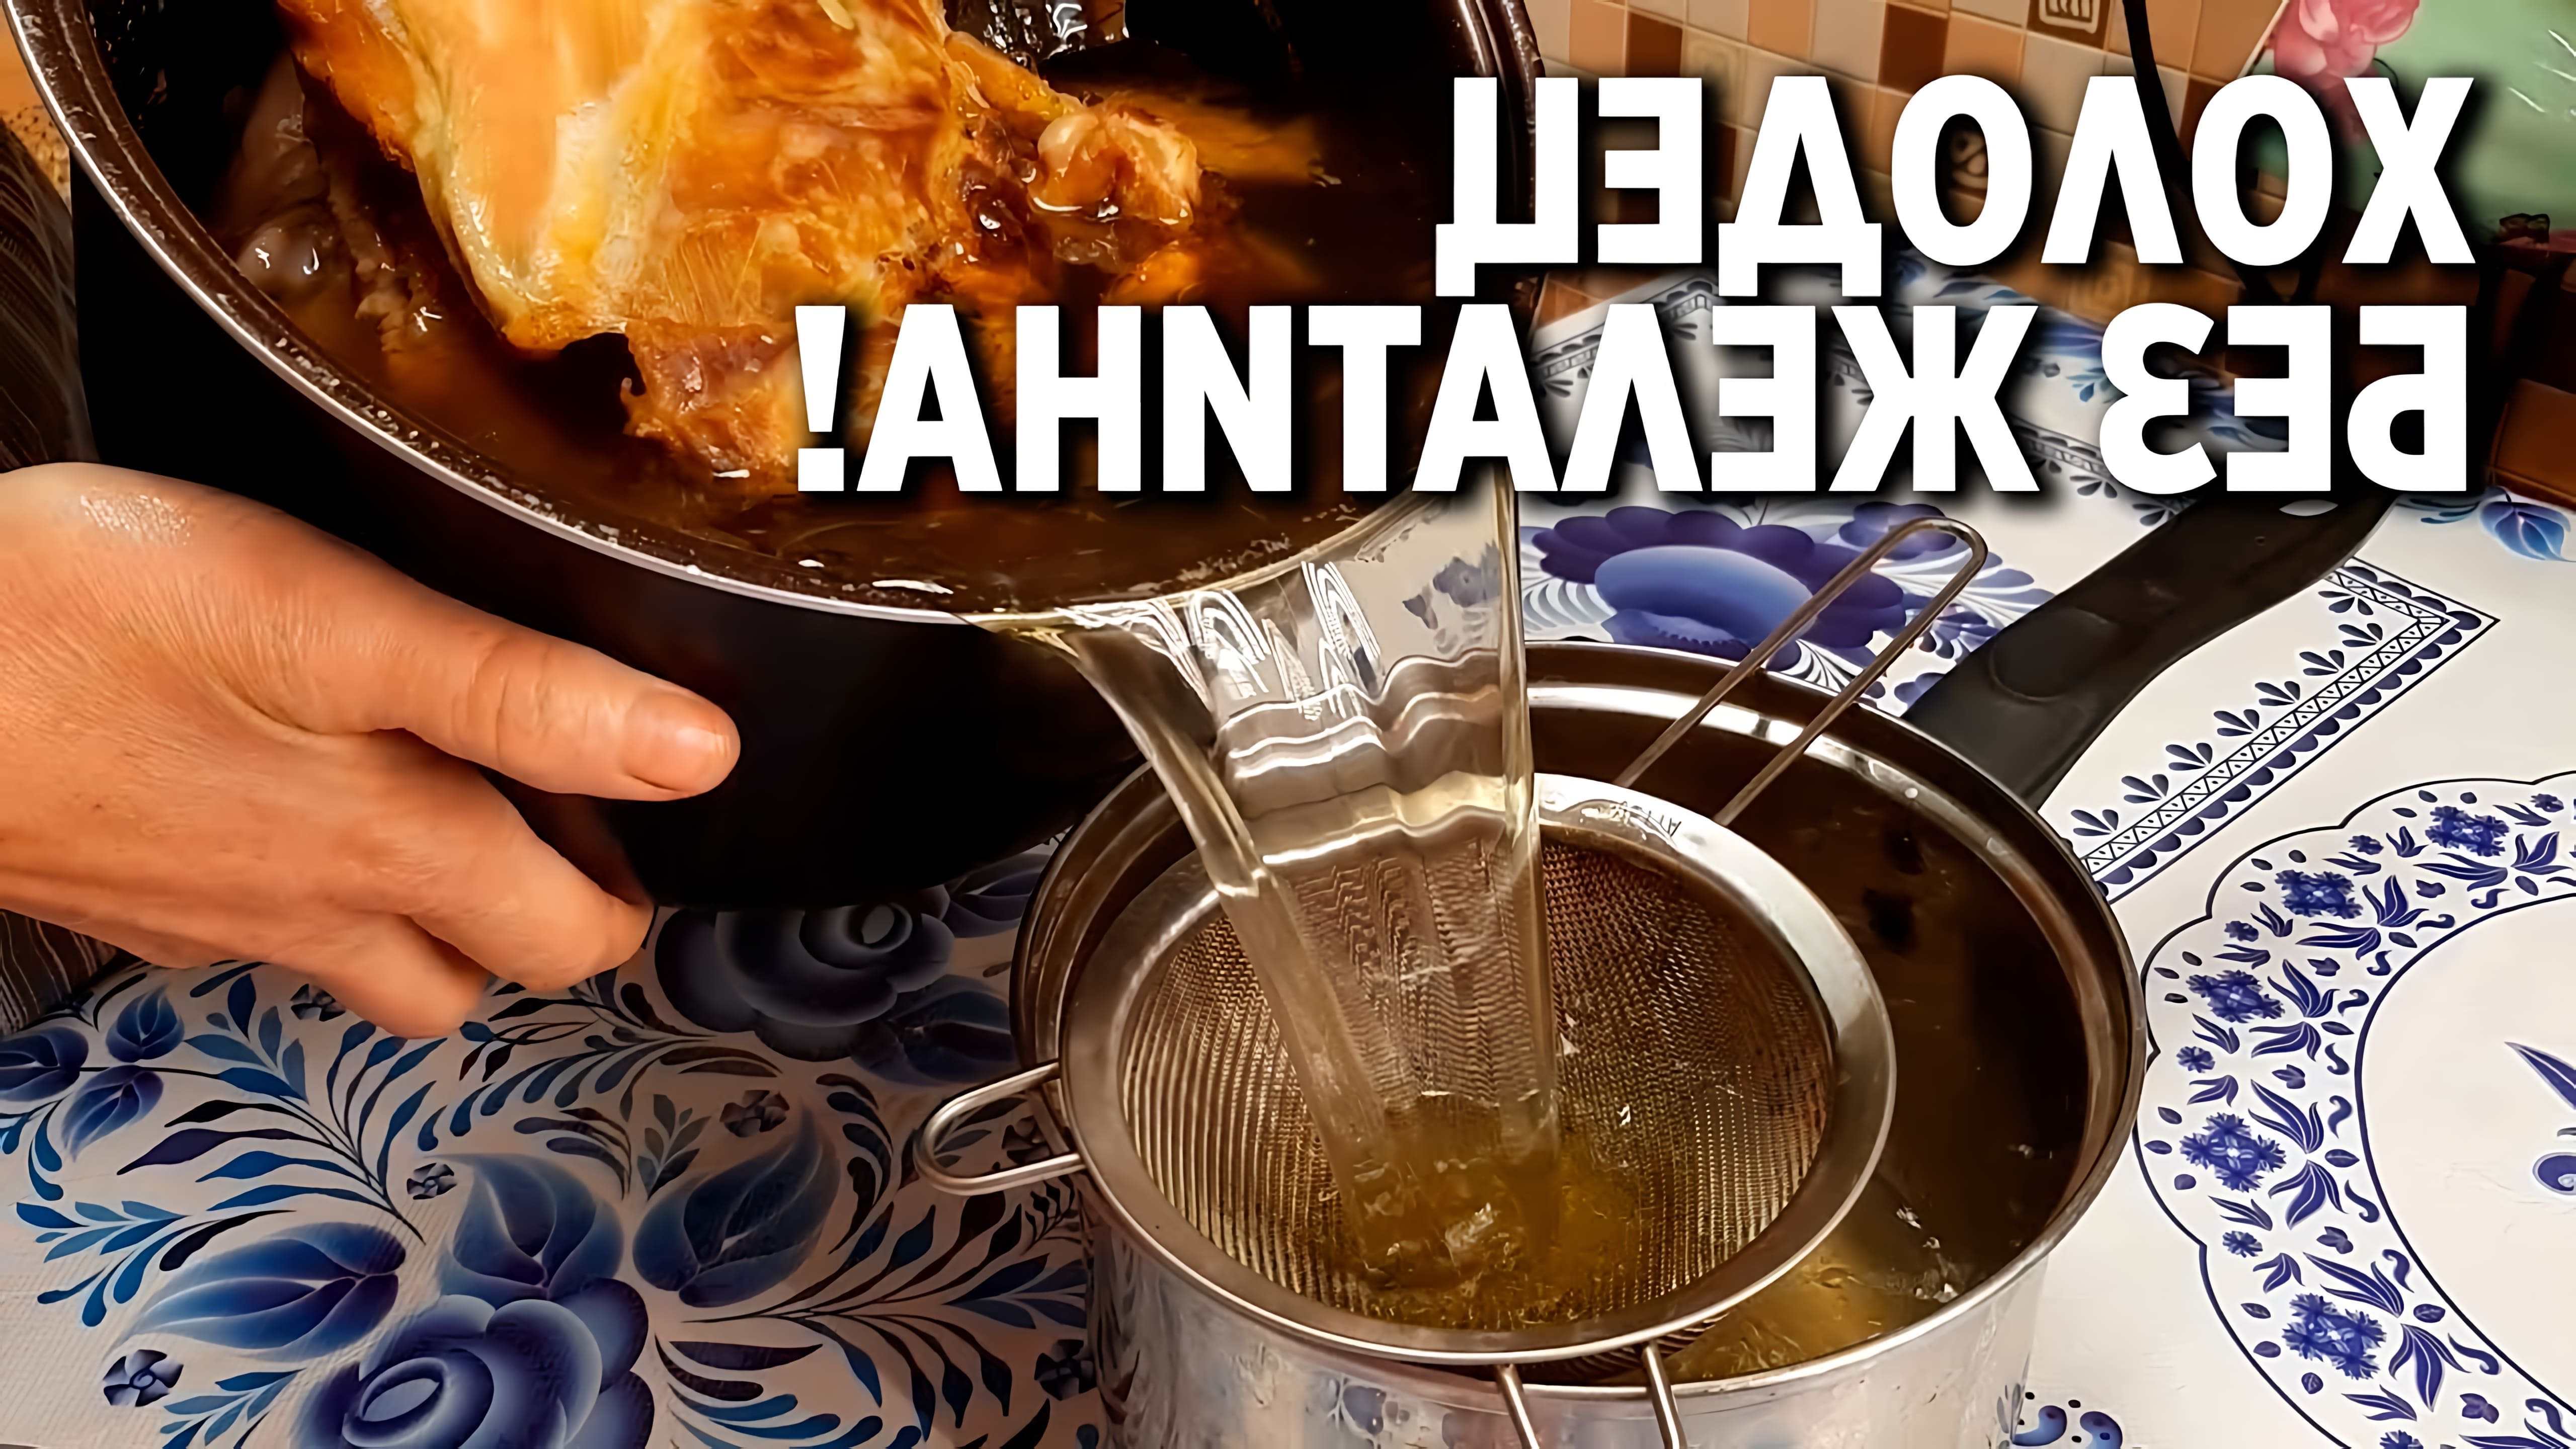 В данном видео демонстрируется процесс приготовления холодца из курицы